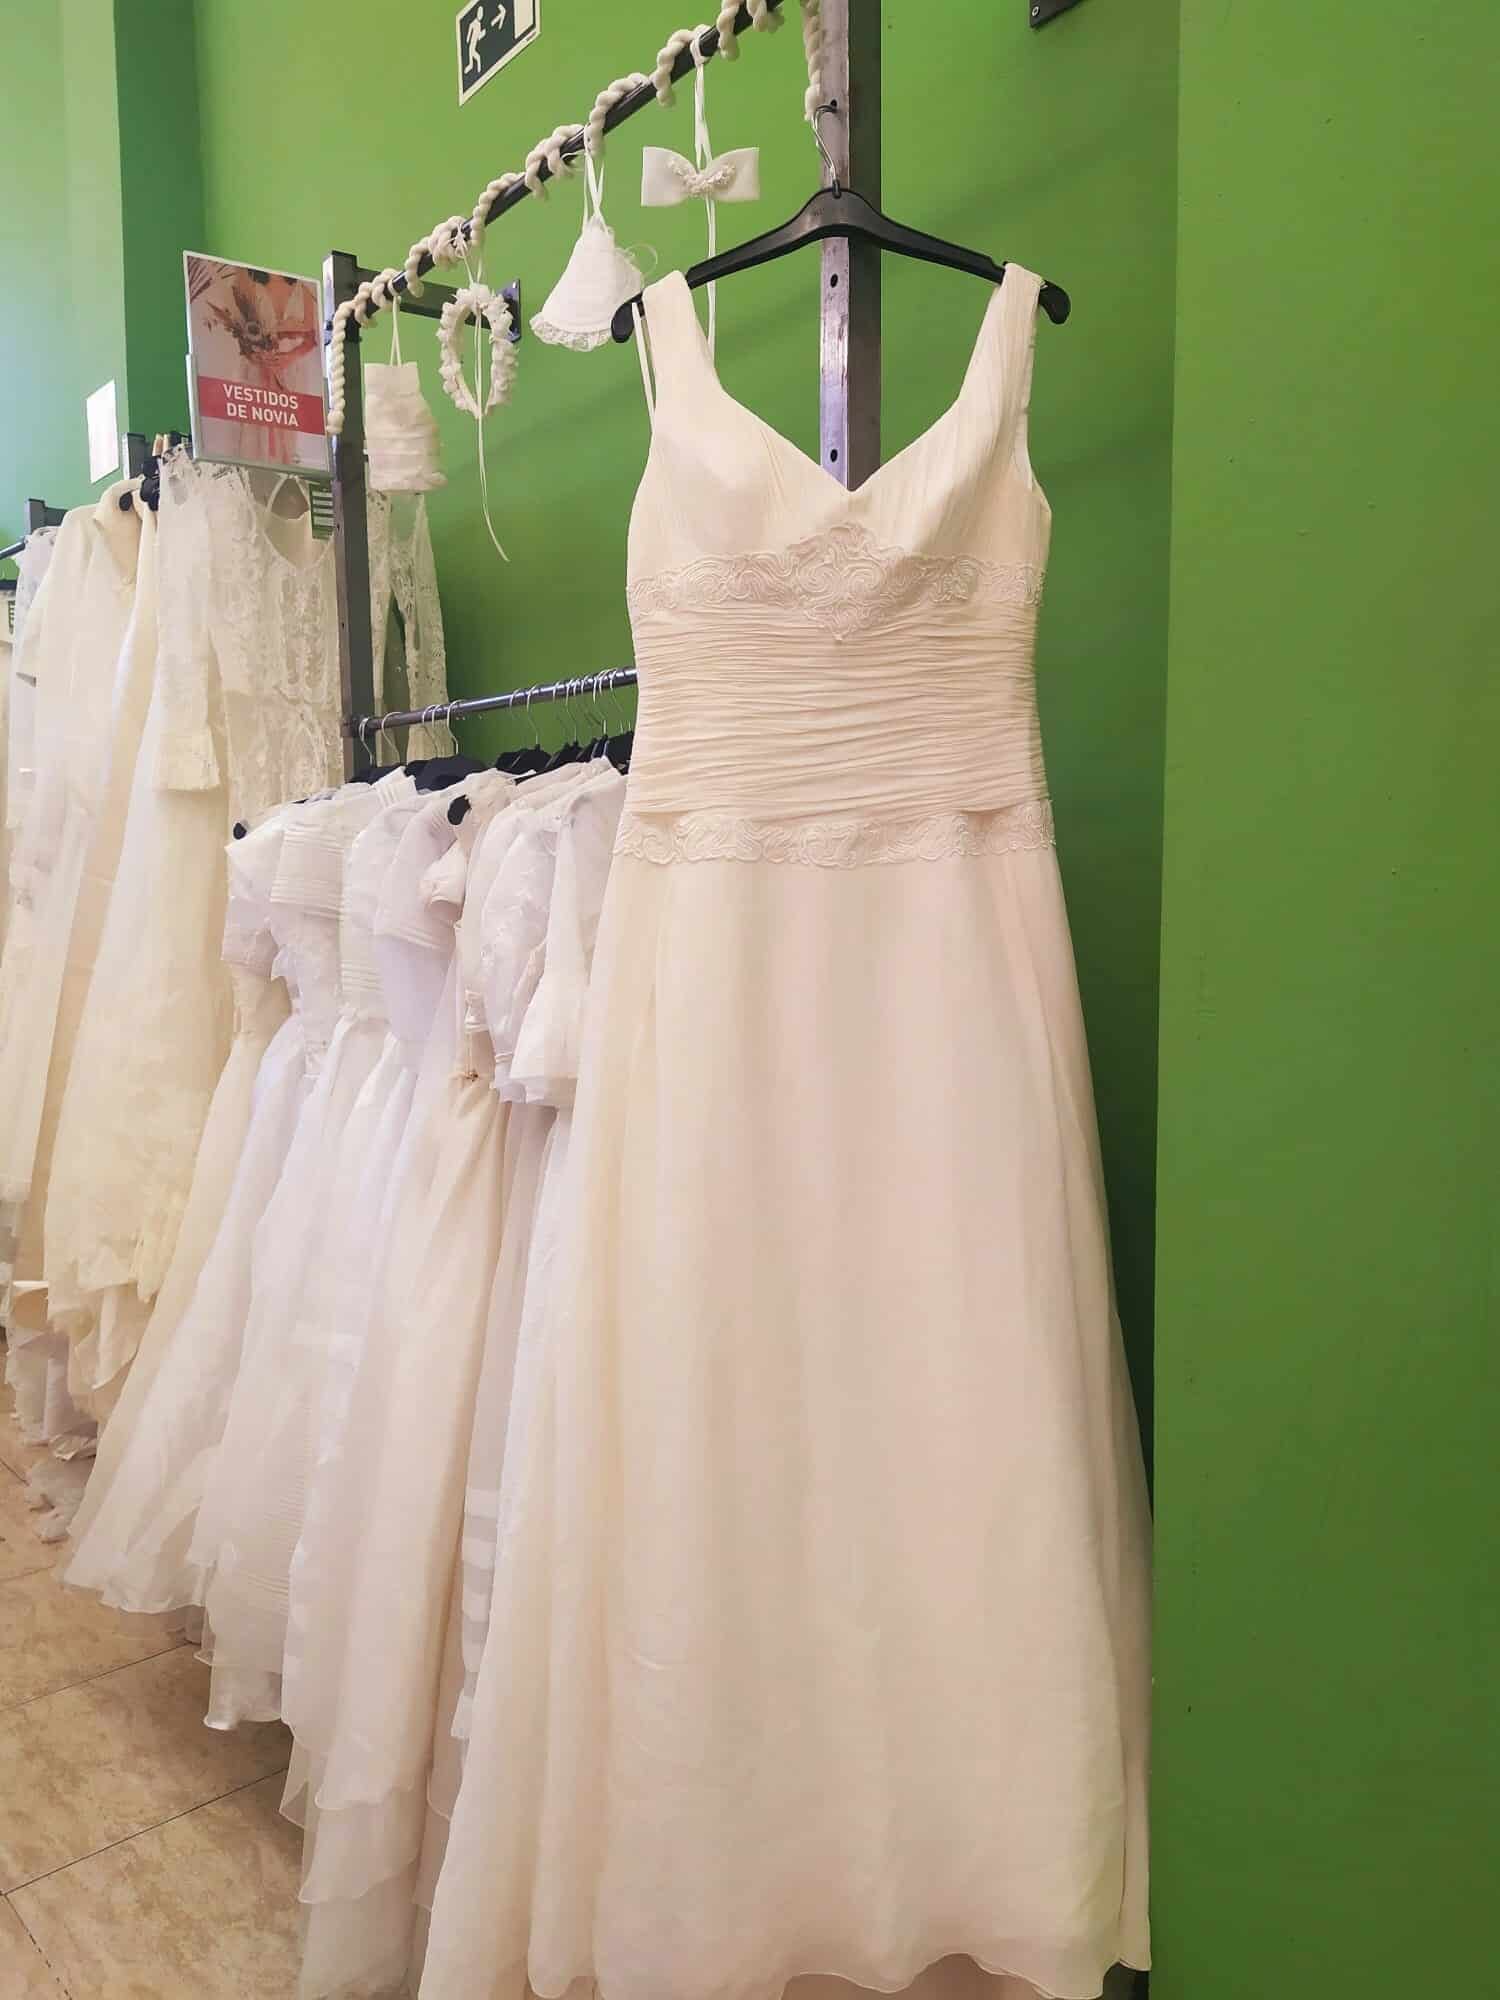 Une occasion unique : des robes de mariée à partir de 30 euros à Barcelone